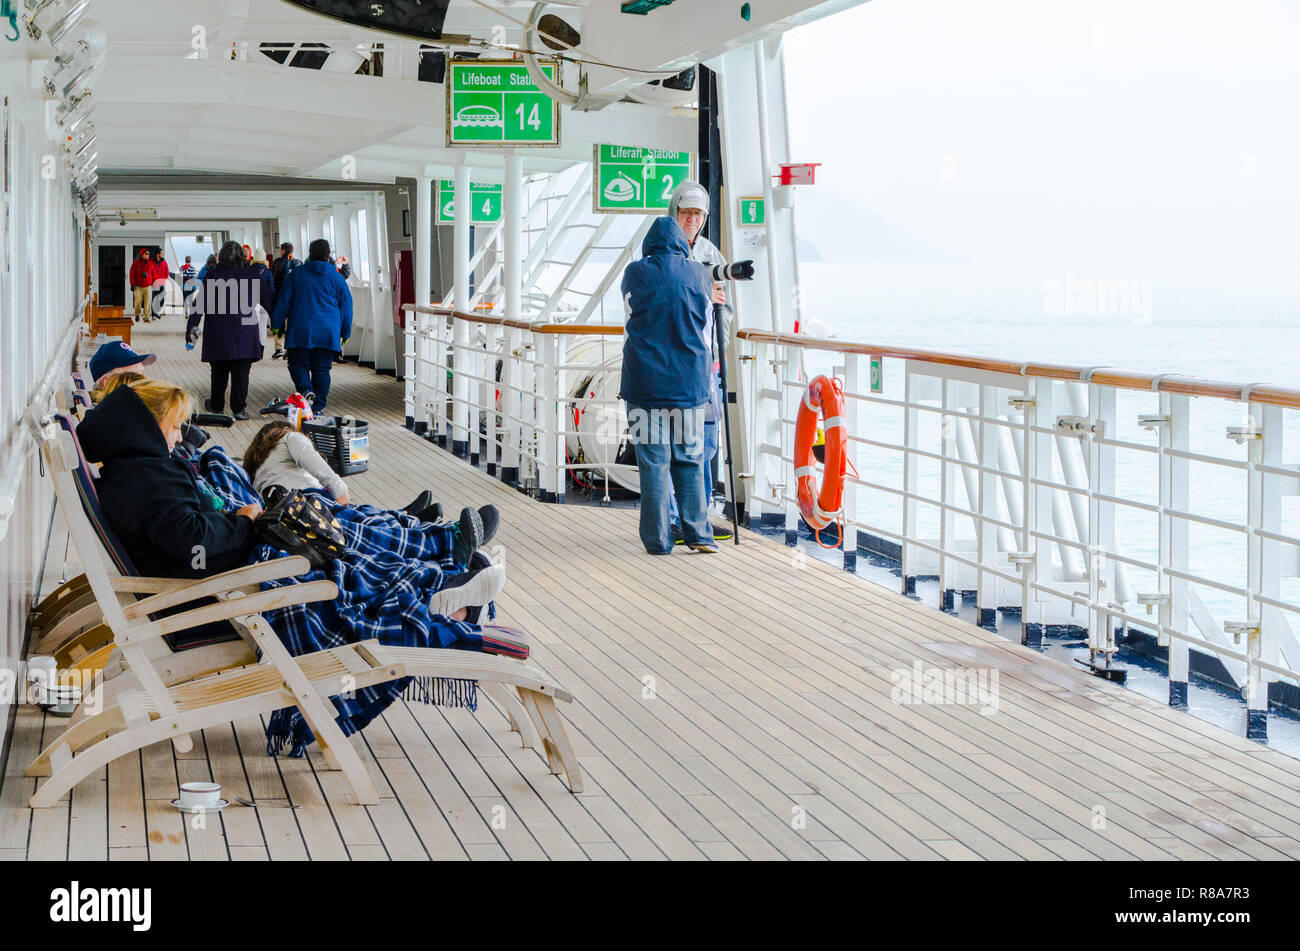 Die Passagiere genießen Sie auf der Terrasse bei kaltem Wetter Kreuzfahrt Urlaub. Rentner genießen unbeschwert reisen Lifestyle auf Kreuzfahrtschiff. Stockfoto